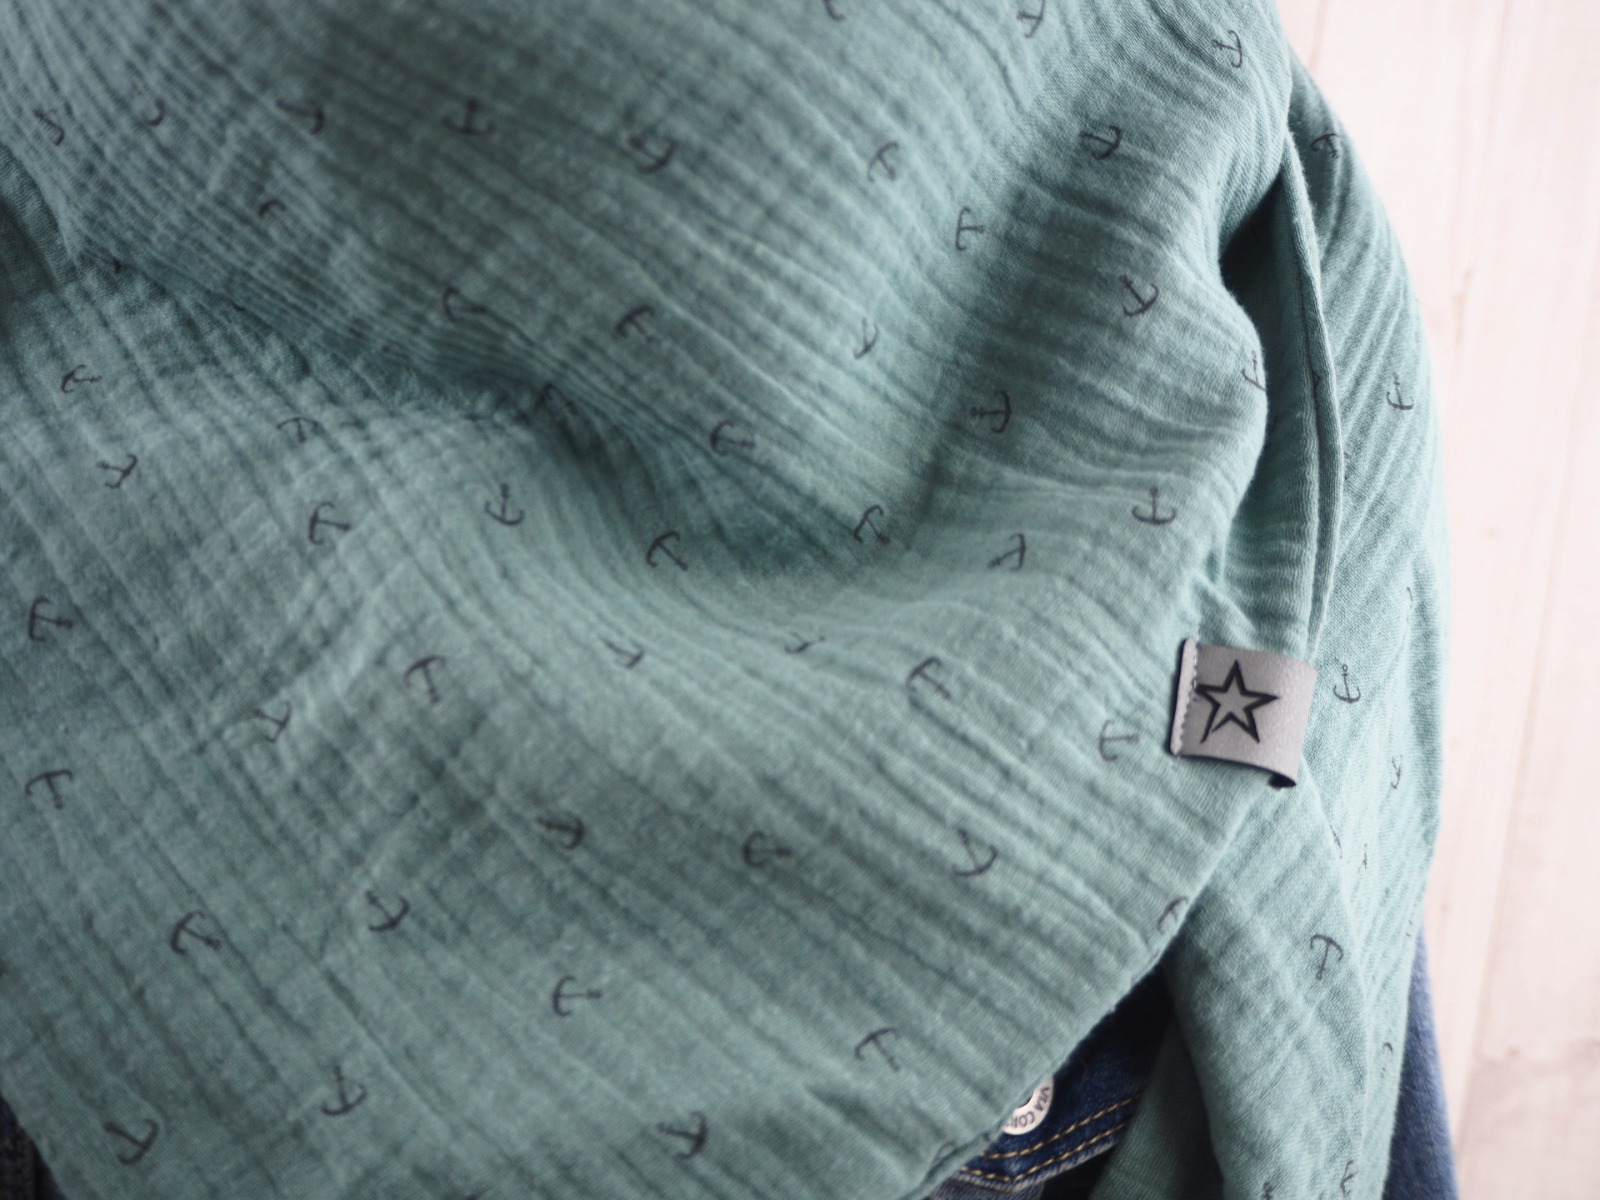 Tuch Anker - Dreieckstuch Musselin Damen - Schal staubiges mint mit kleinen Ankern in grau - XXL Tuch aus Baumwolle -Mamatuch 2